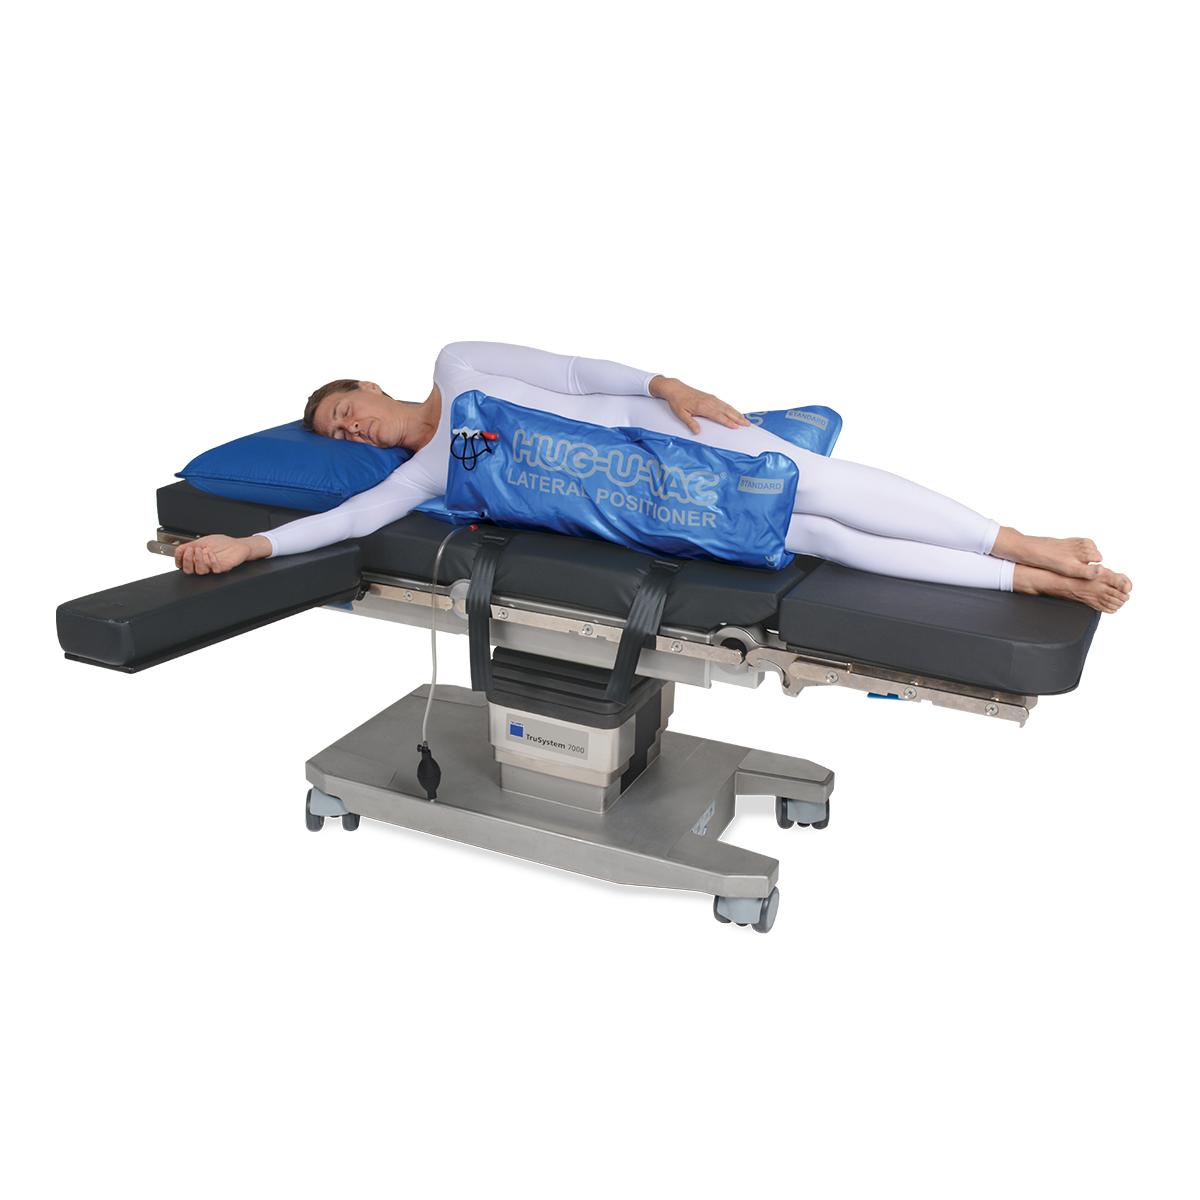 Allen® Hug-U-Vac® Lateral Positioner mit Patient in Seitenlage